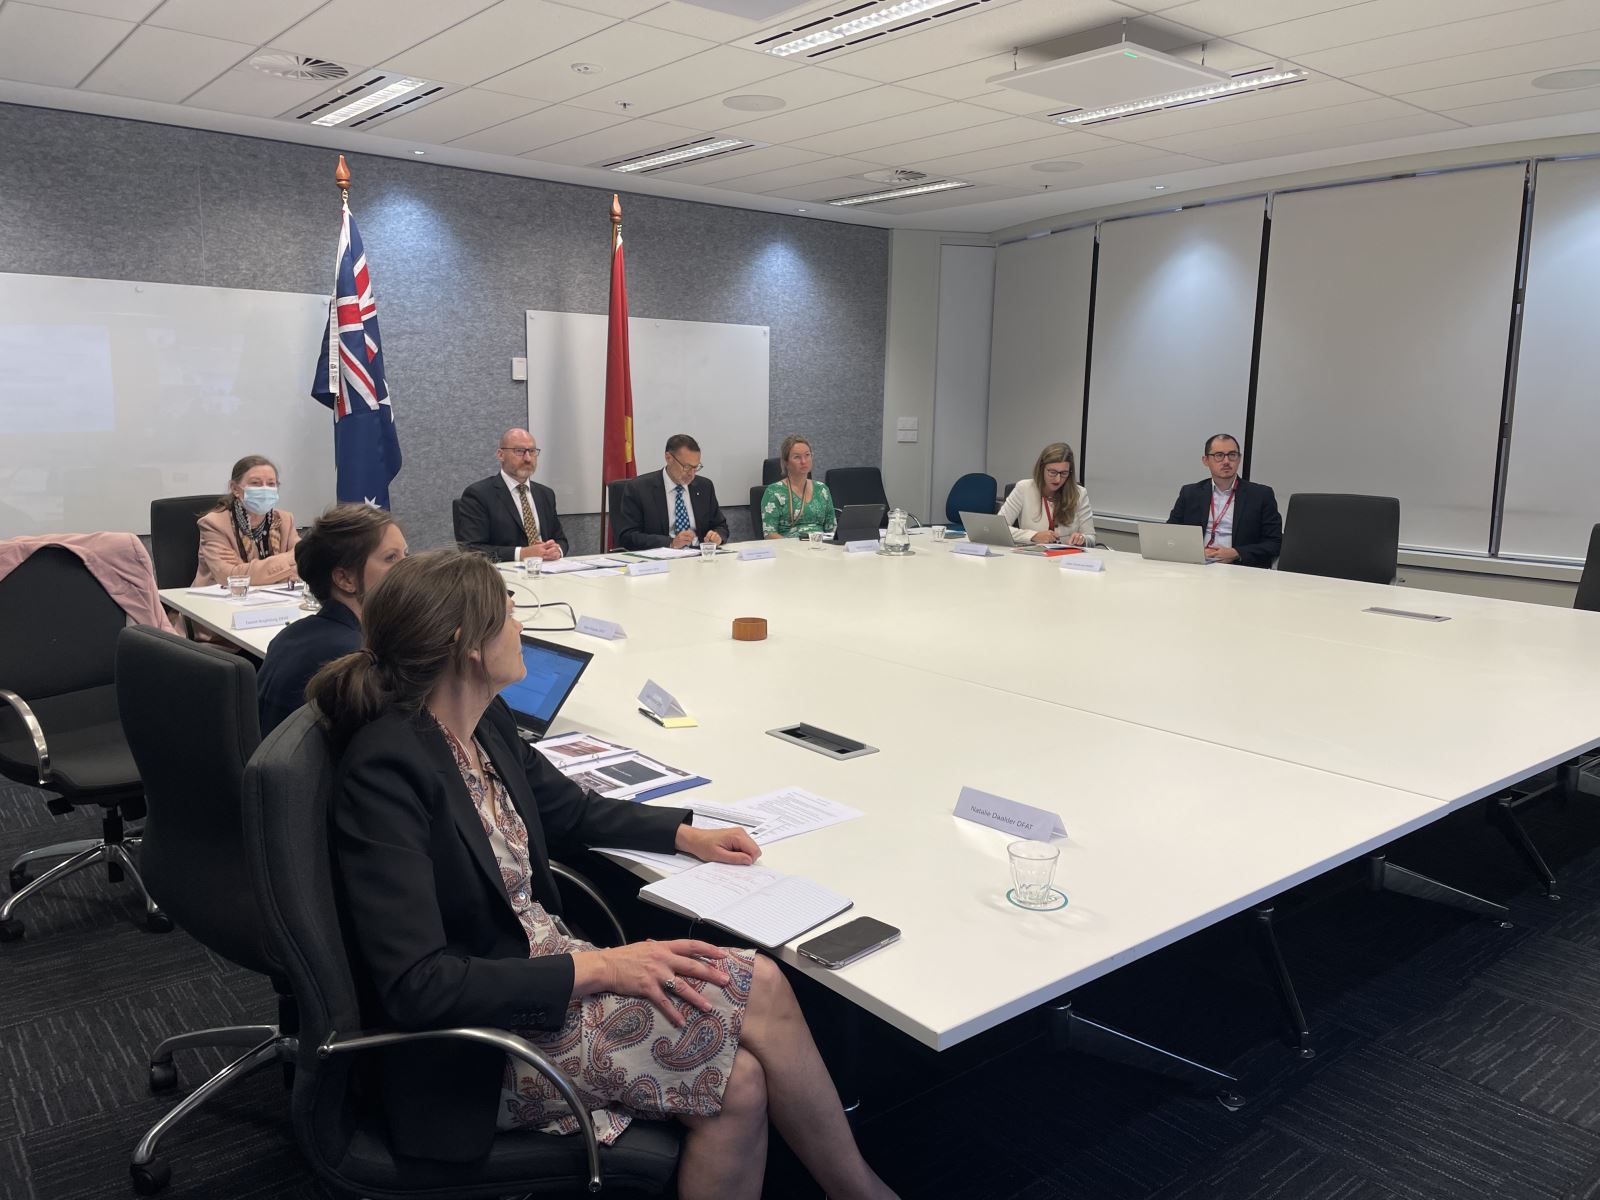 Phiên Đối thoại cấp cao lần thứ nhất về phòng vệ thương mại giữa Việt Nam và Australia trong khuôn khổ Chiến lược tăng cường hợp tác kinh tế (EEES) Việt Nam - Australia